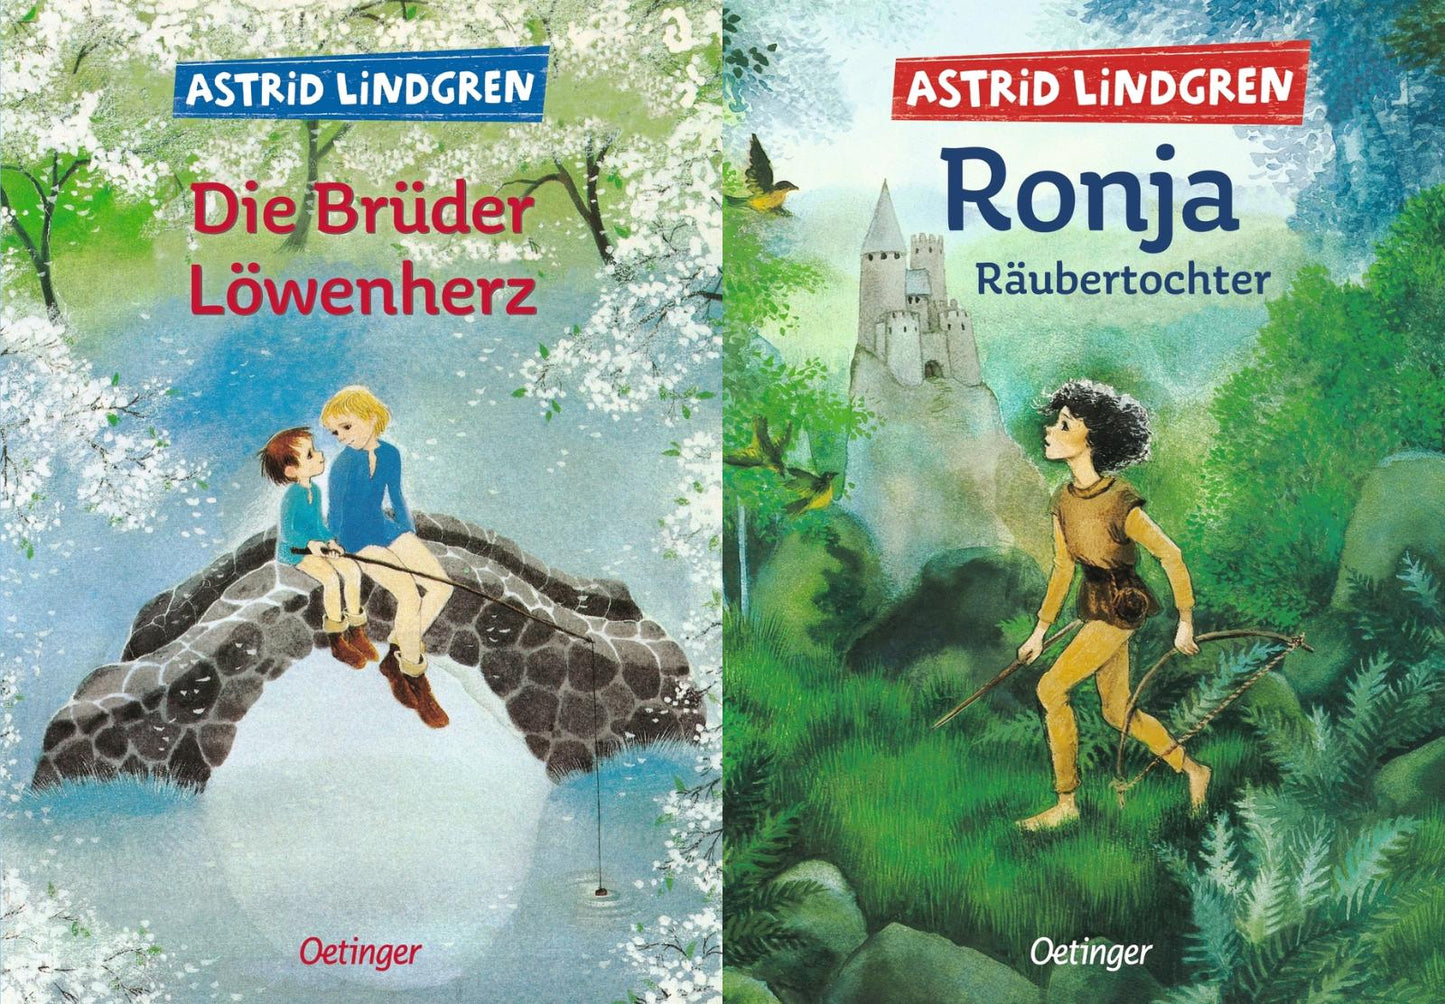 Die Brüder Löwenherz + Ronja, Räubertochter + 1 exklusives Postkartenset